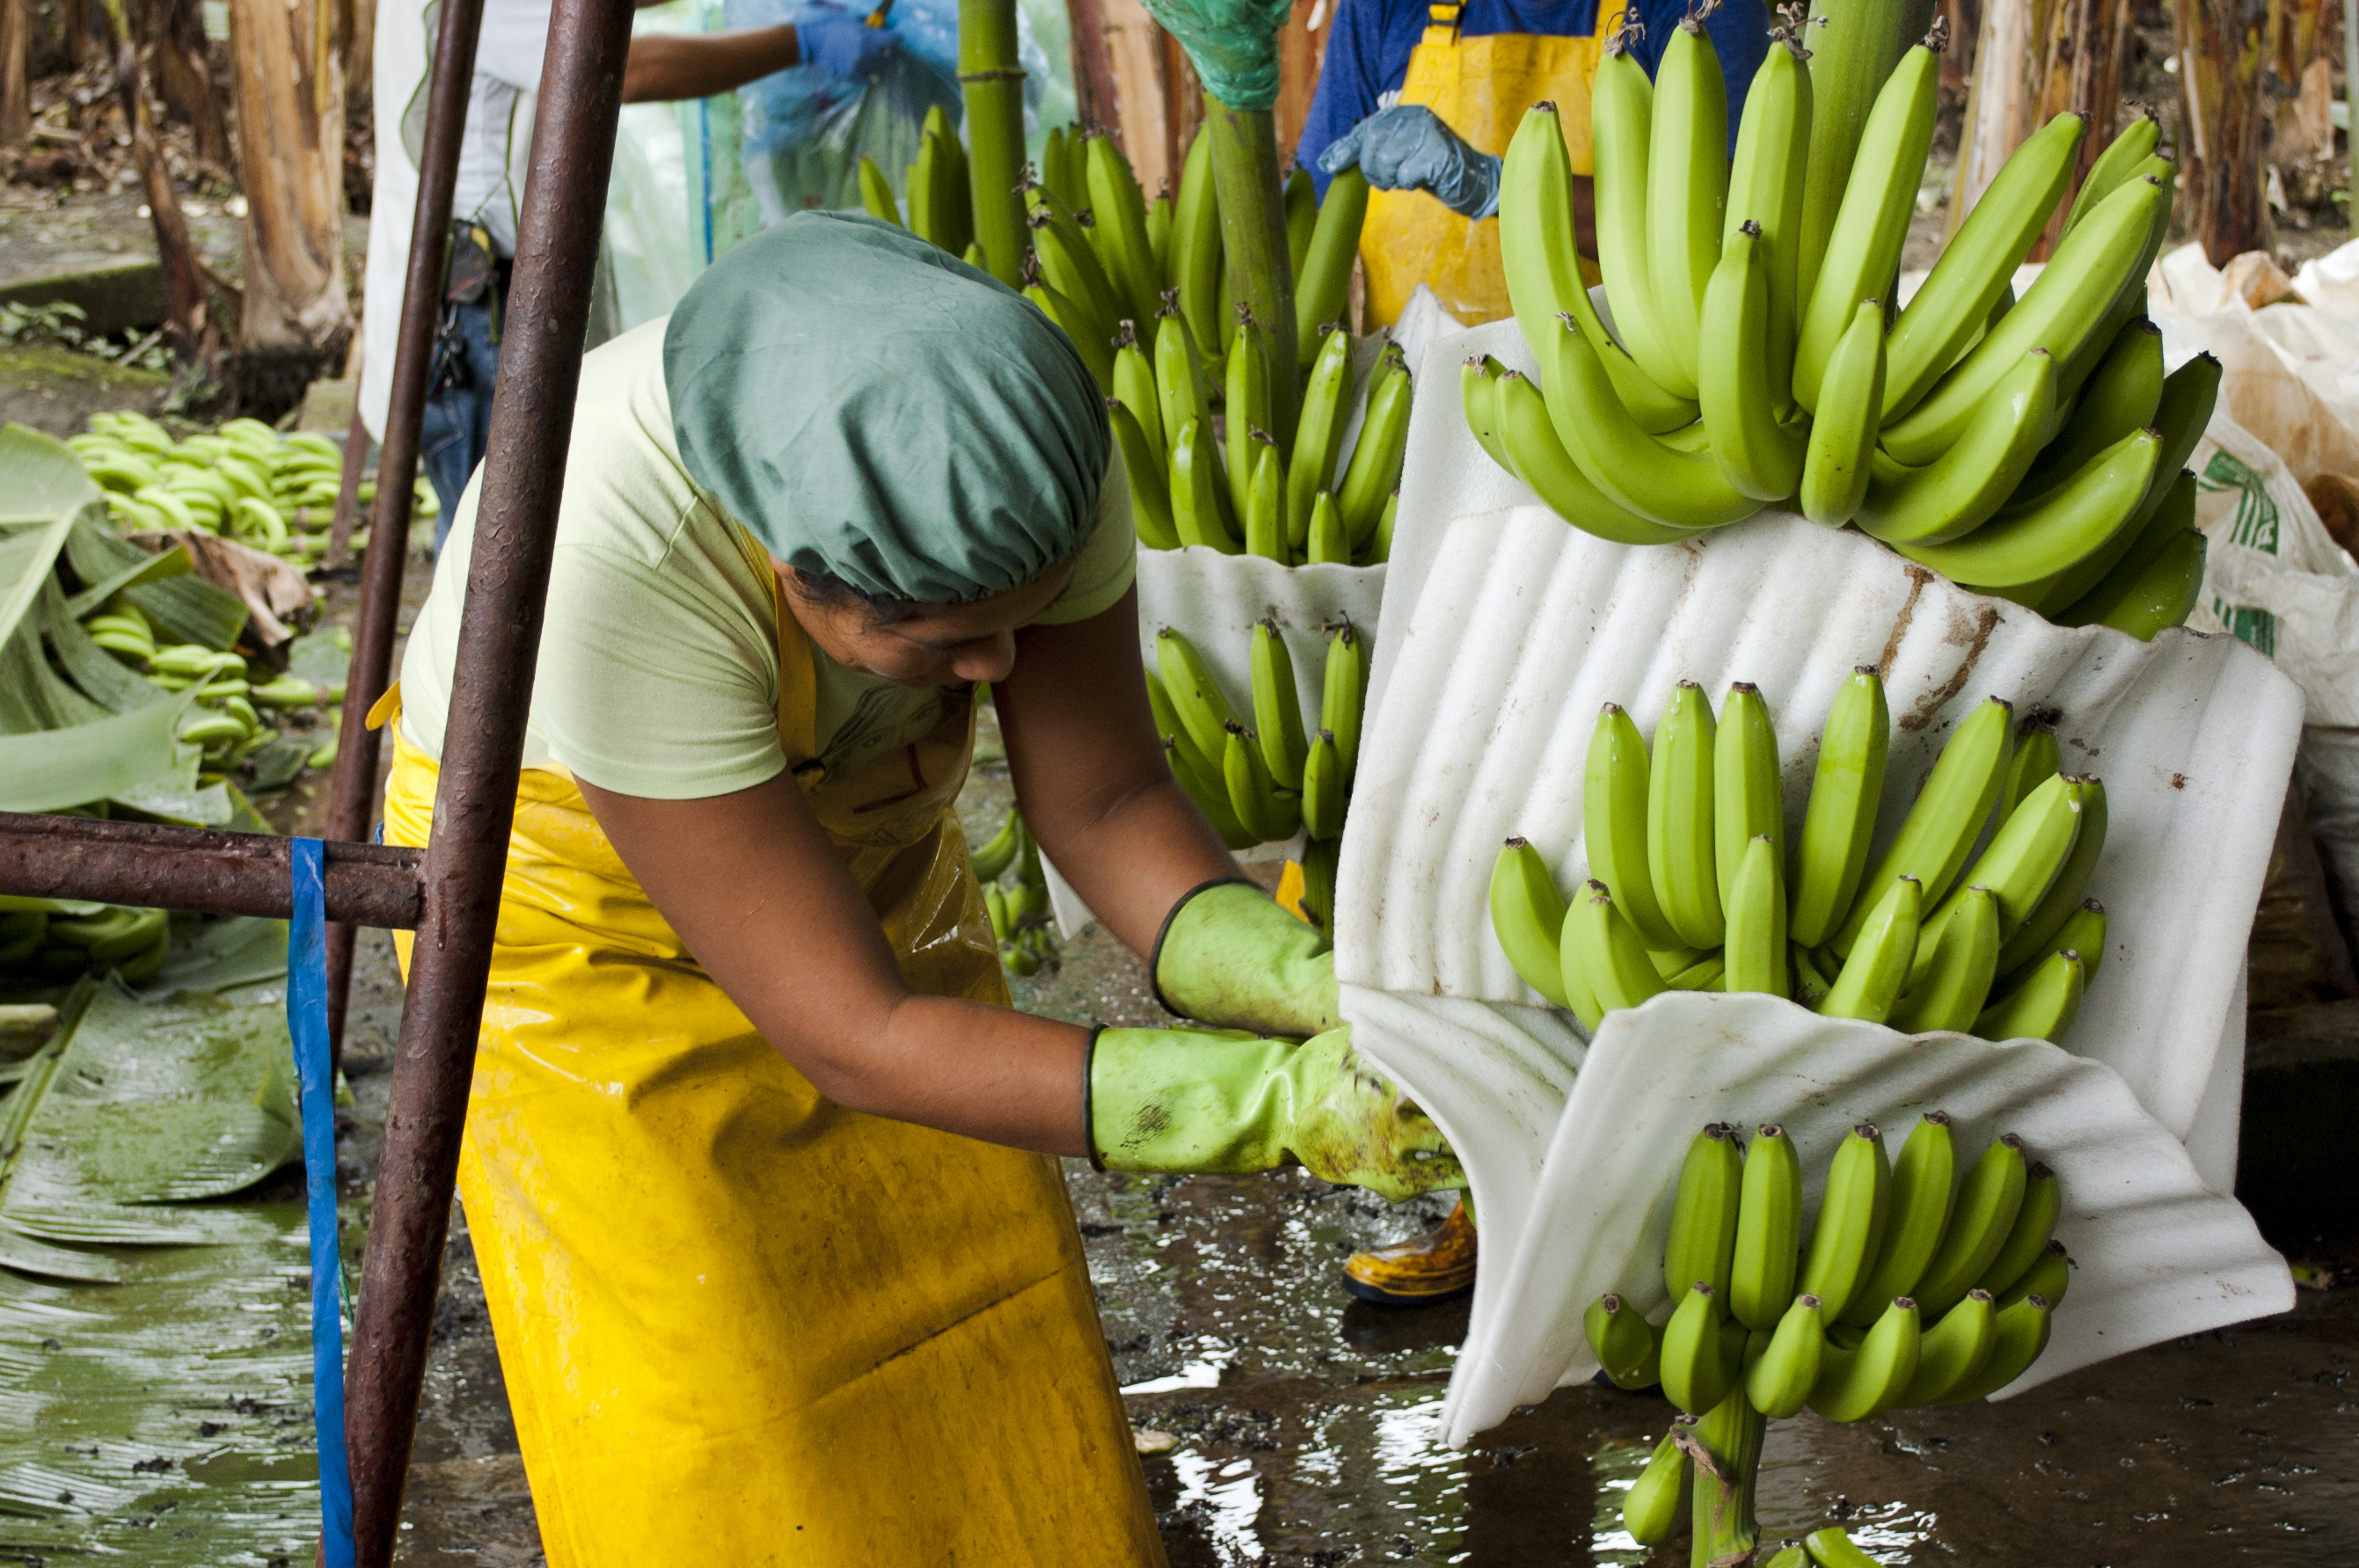 En arbetare i gult förkläde på en bananodling.